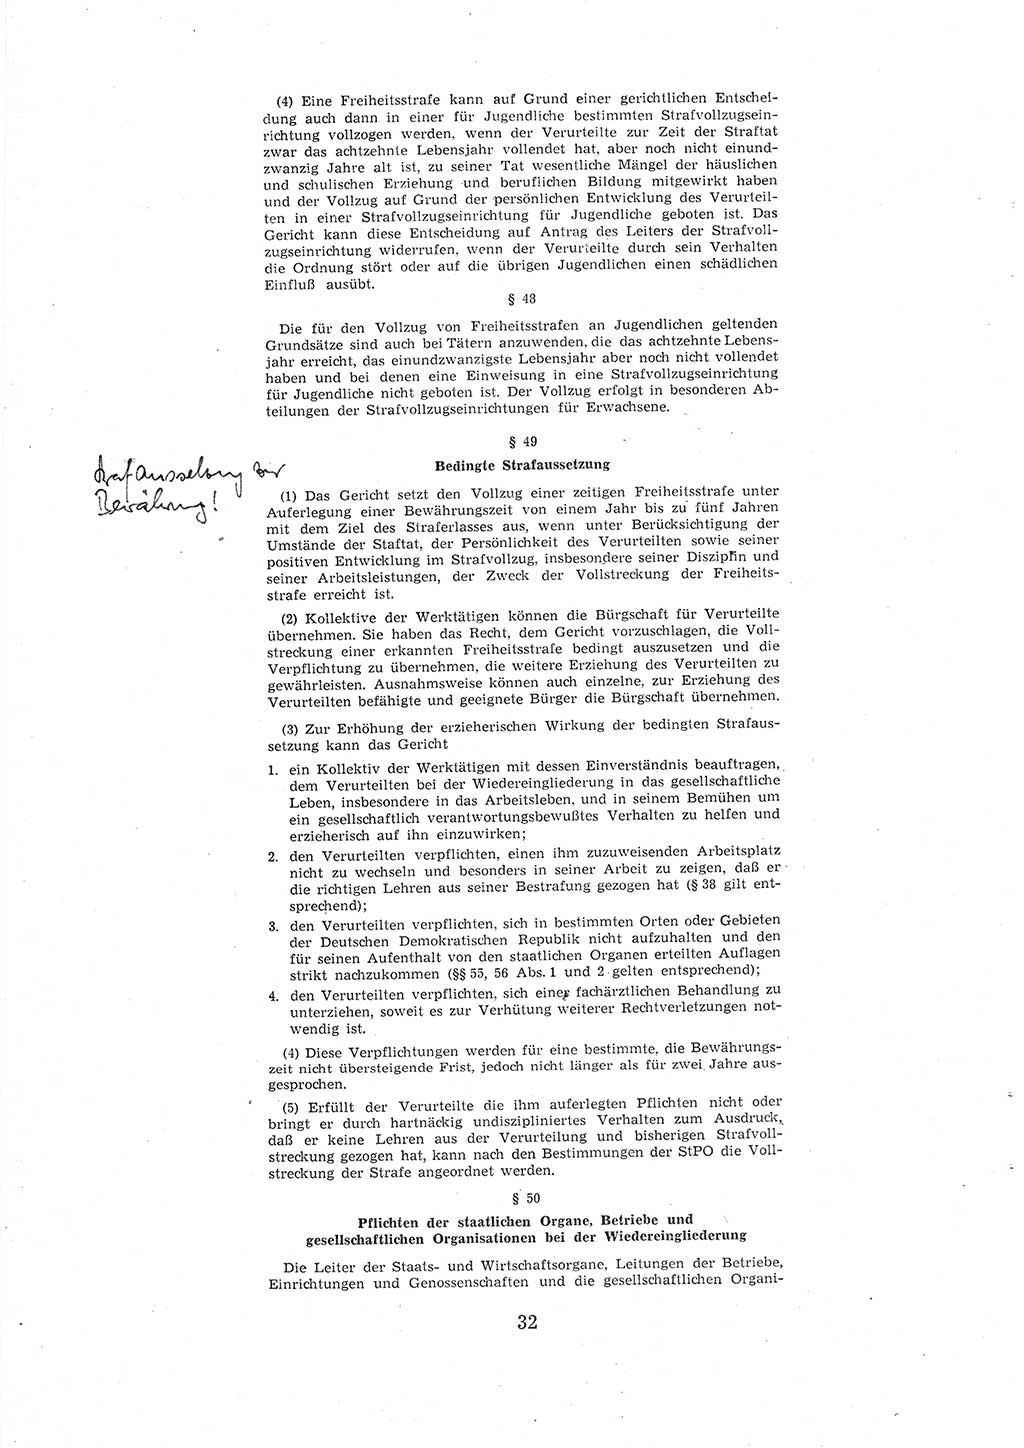 Entwurf des Strafgesetzbuches (StGB) der Deutschen Demokratischen Republik (DDR) 1967, Seite 32 (Entw. StGB DDR 1967, S. 32)